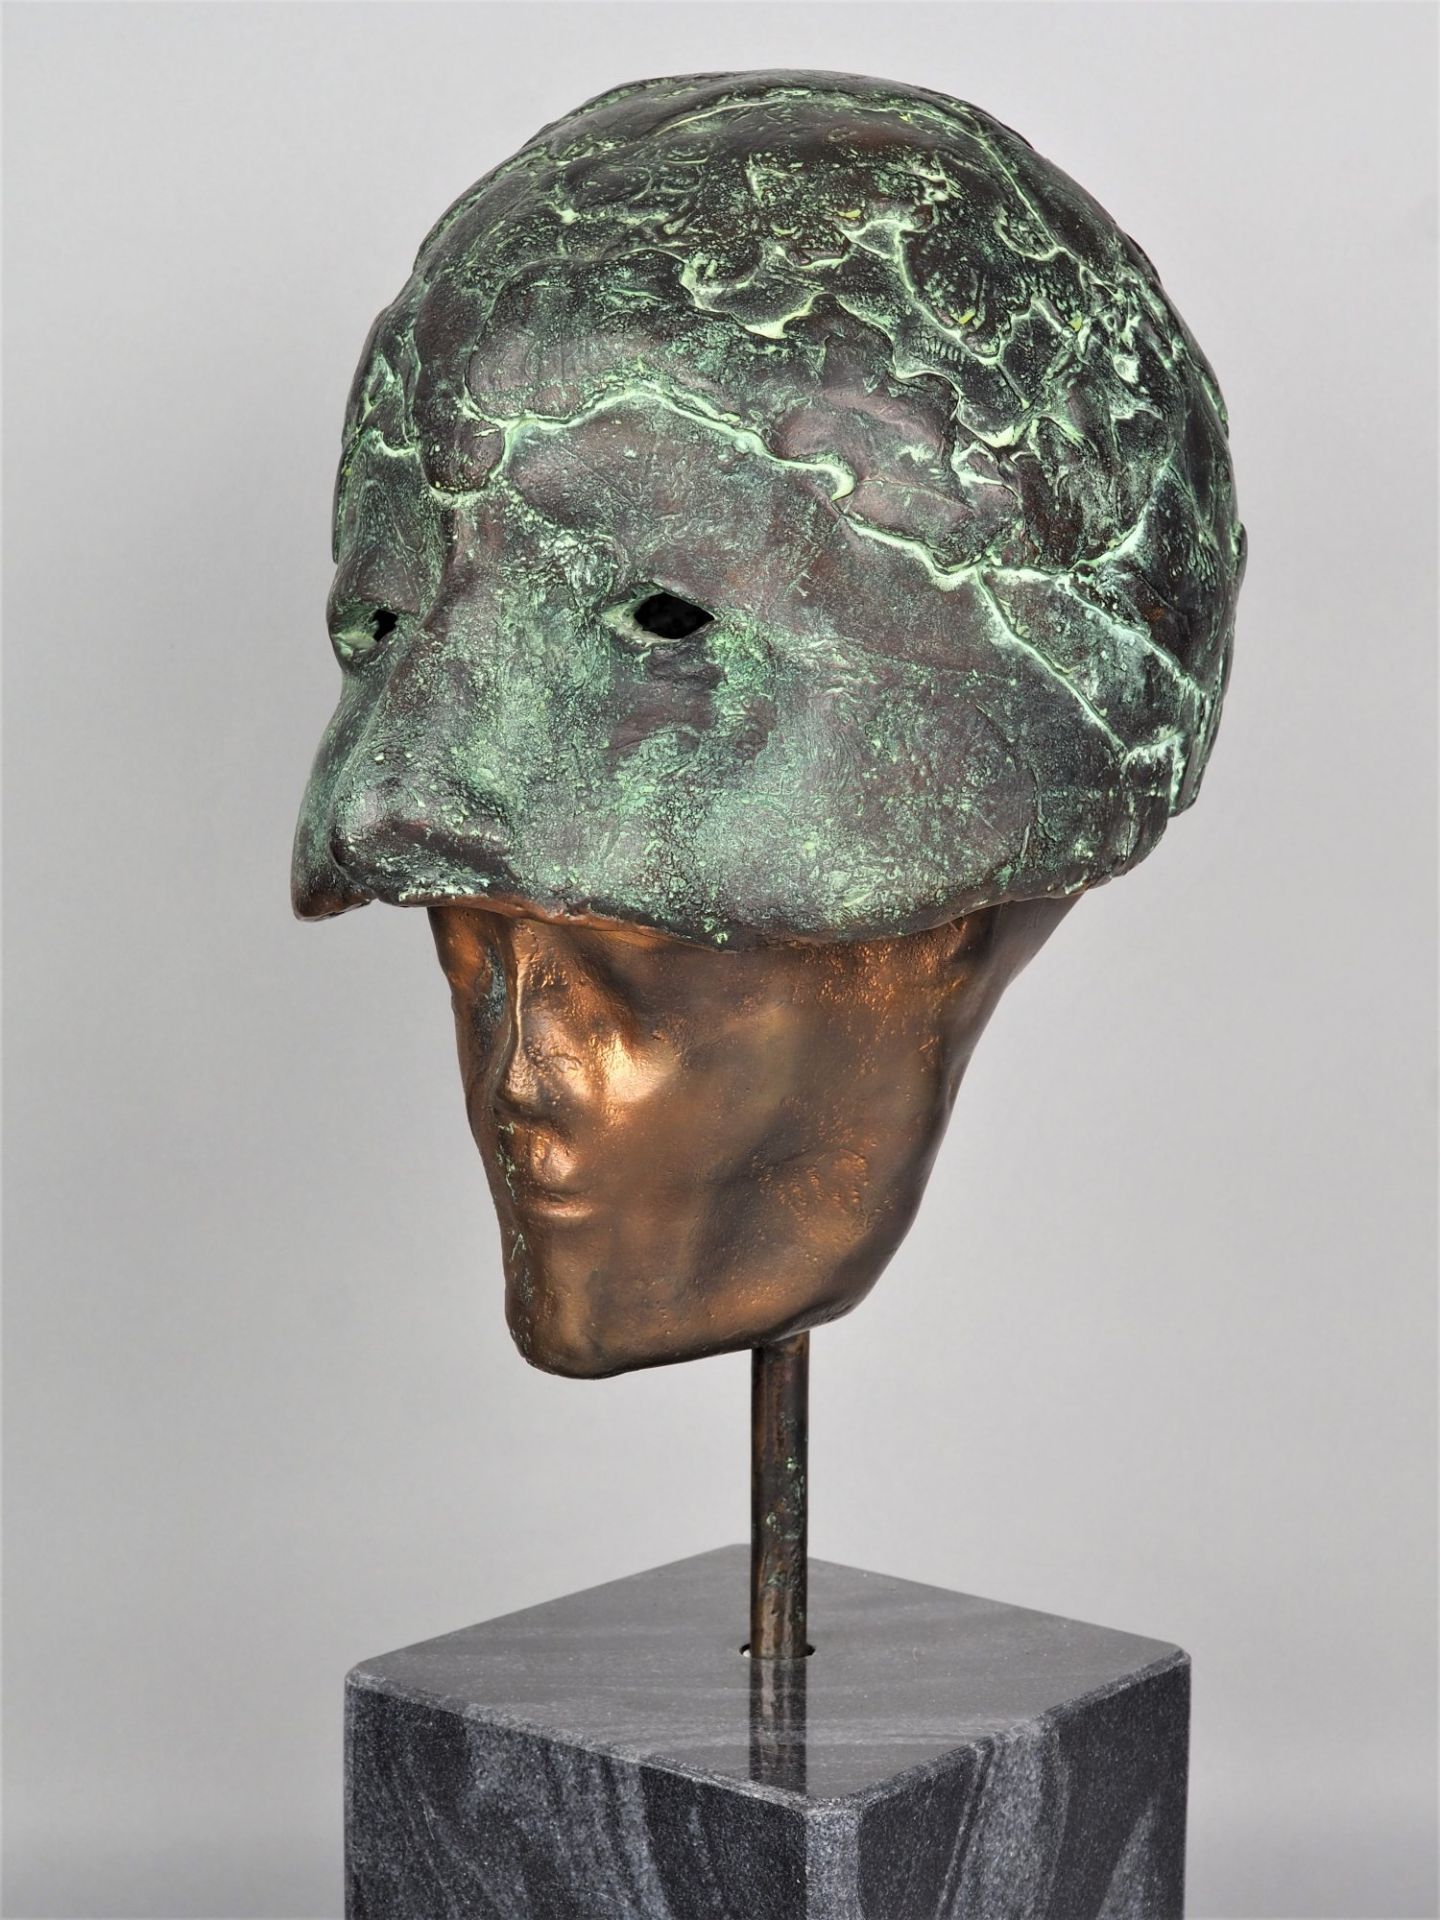 Bronzeplastik Kopf mit Maske - monogrammiert "A.P.", 1999 - Bild 2 aus 5